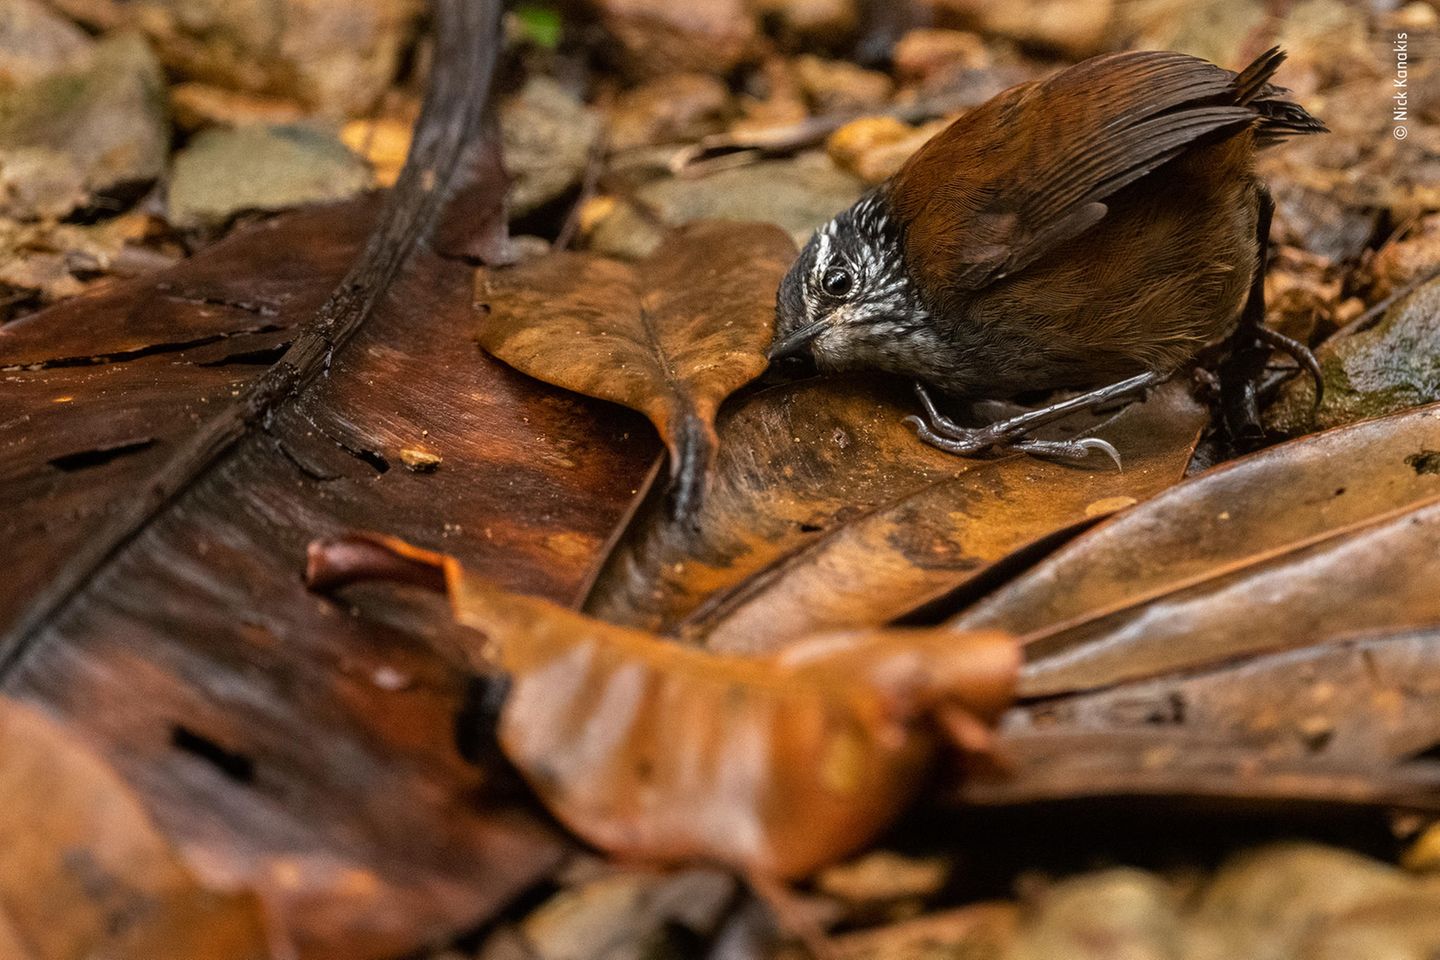 Die scheuen Zaunkönige vor die Kamera zu bekommen, ist kein einfaches Unterfangen. Dem Fotografen Nick Kanakis hüpfte der kleine Vogel glücklicherweise direkt vor die dafür positionierte Kamera. Das Tier drückte sogar sein Ohr auf den Boden, um nach kleinen Insekten zu lauschen.